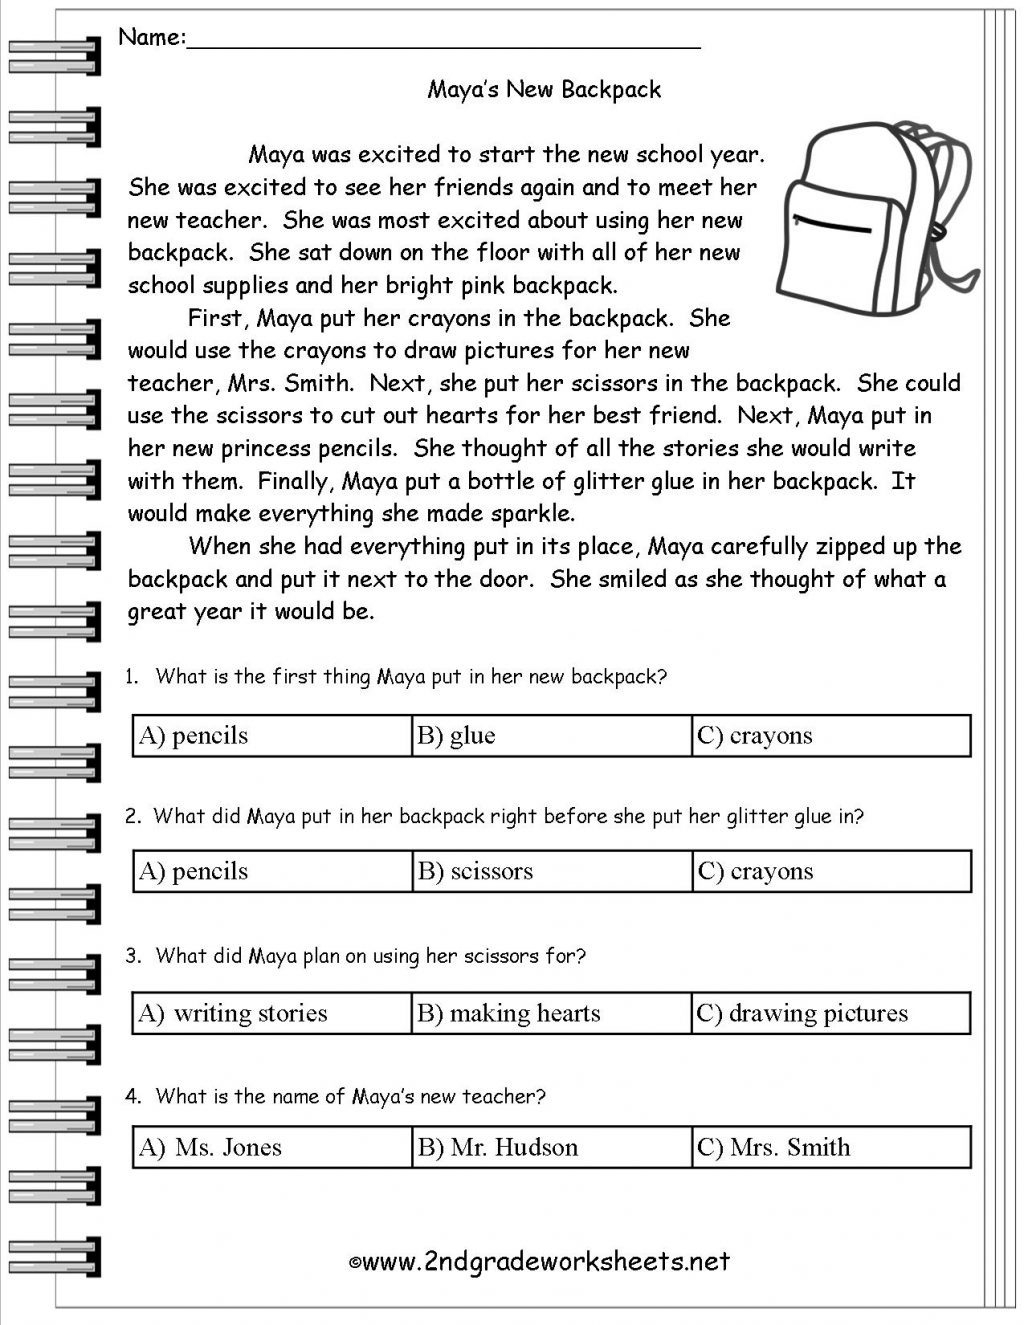 Kateho Free Printable Kindergarten Reading Comprehension Worksheets - Free Printable Reading Comprehension Worksheets For Adults